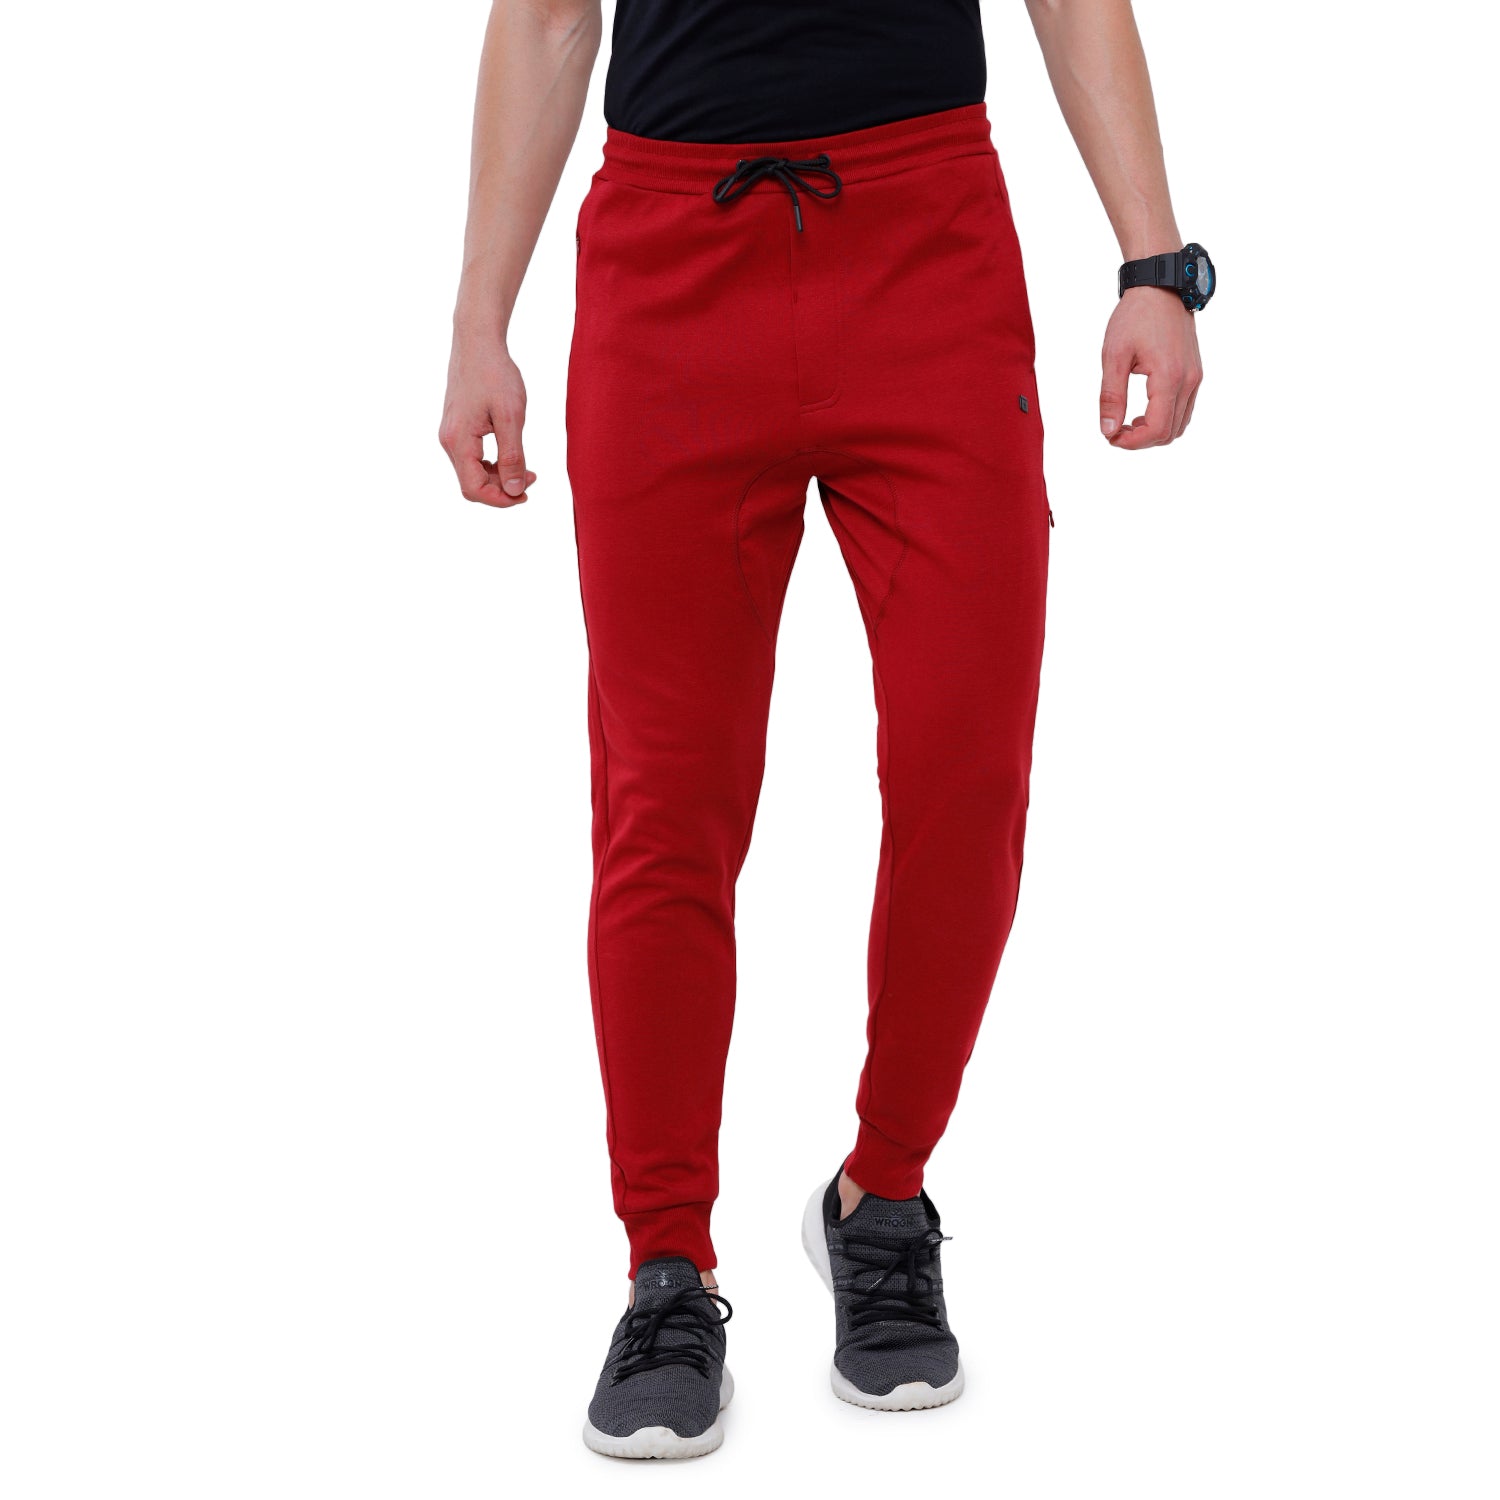 Buy Red Track Pants for Men by TOMMY HILFIGER Online  Ajiocom